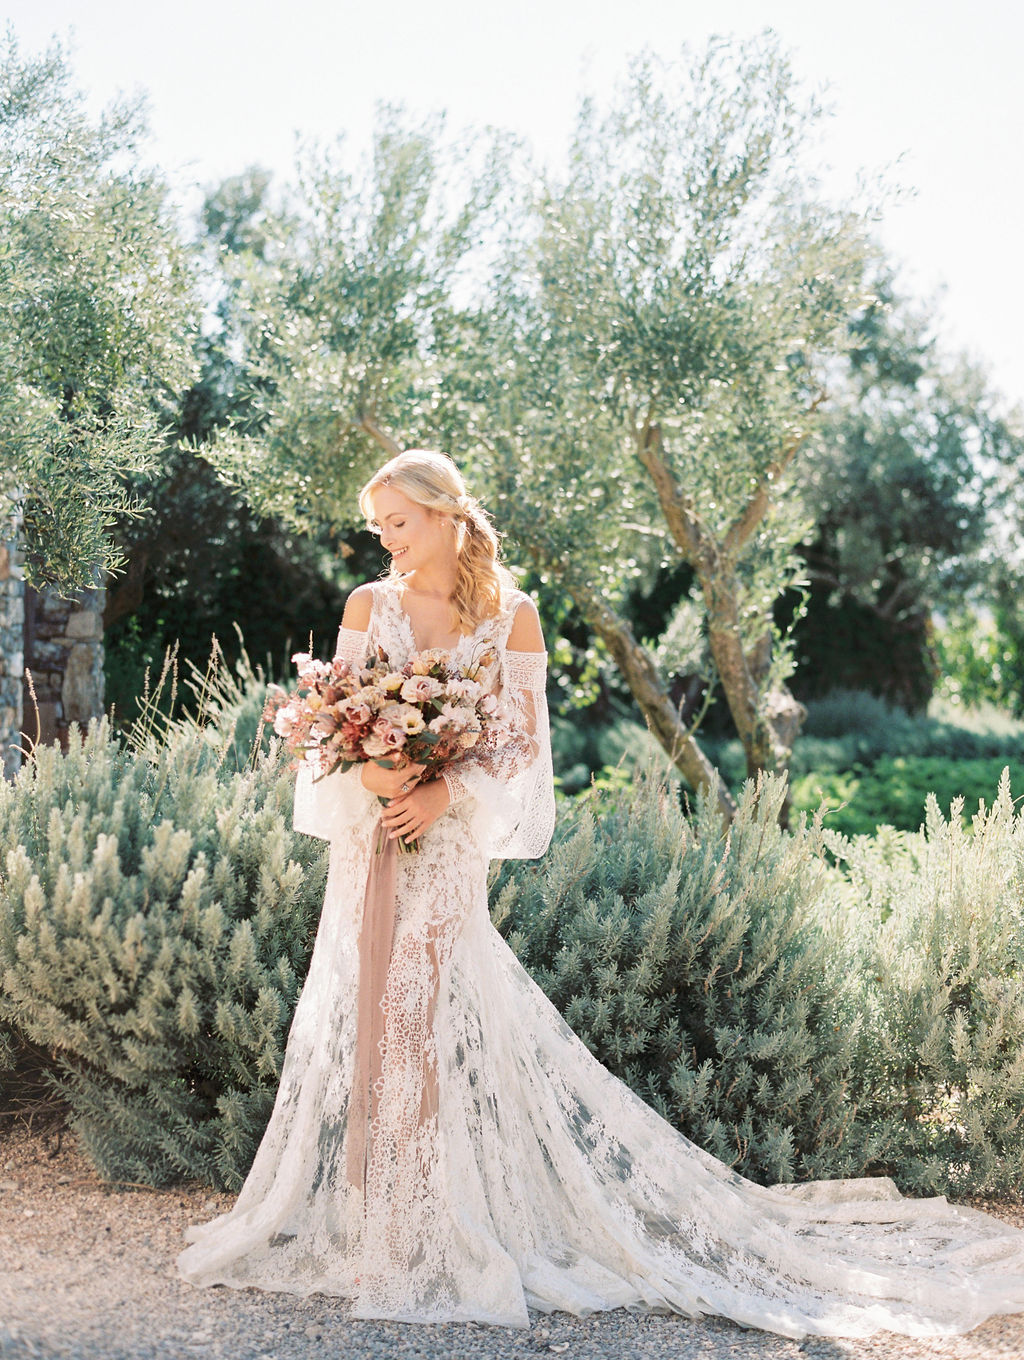 Wedding In Greece At The Margi Farm - Bride Portrait